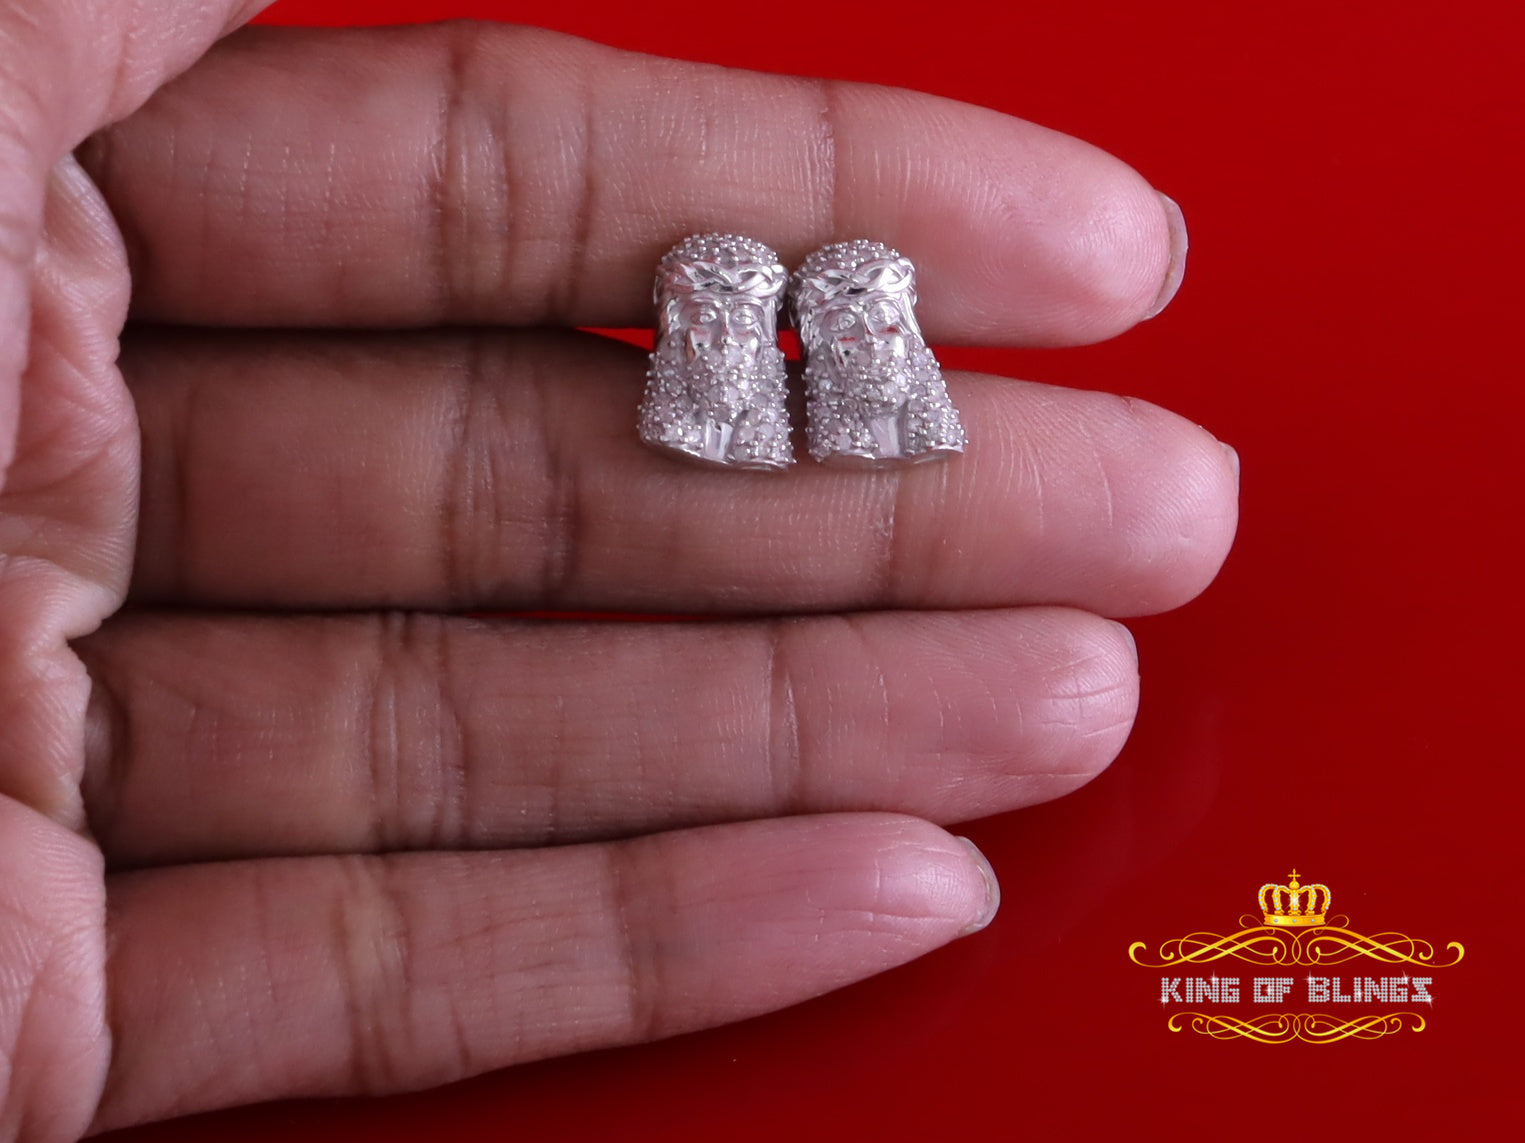 King Of Bling's New SmaLL 0.50ct Diamond 925 Silver White for Men's & Women Stud JESUS Earring King of Blings